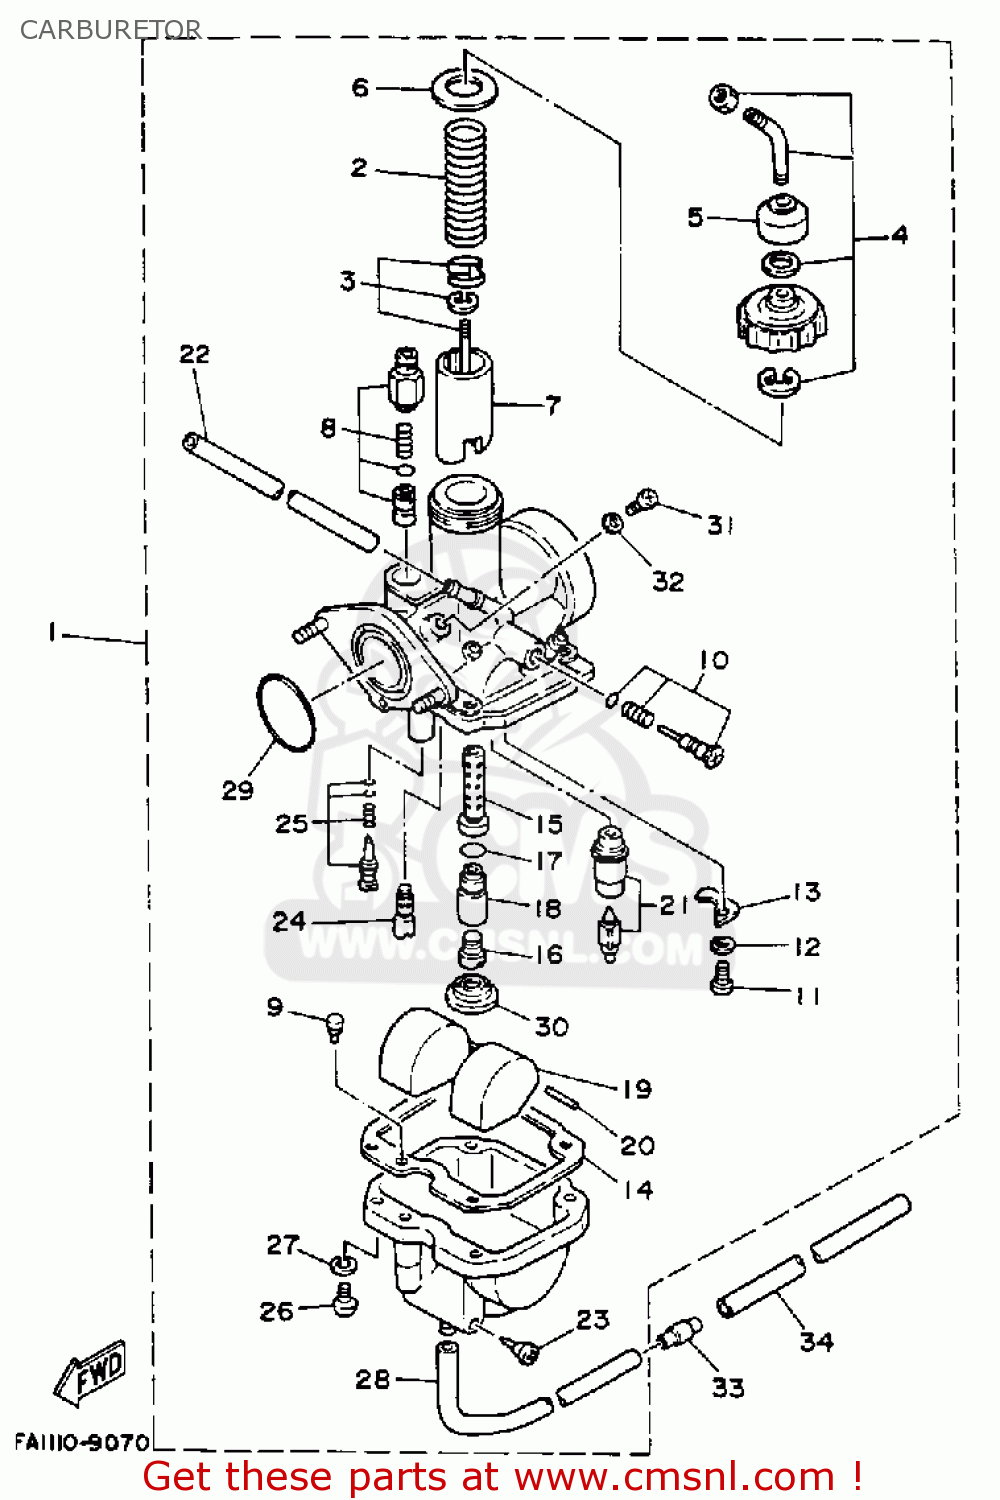 yamaha breeze carburetor diagram